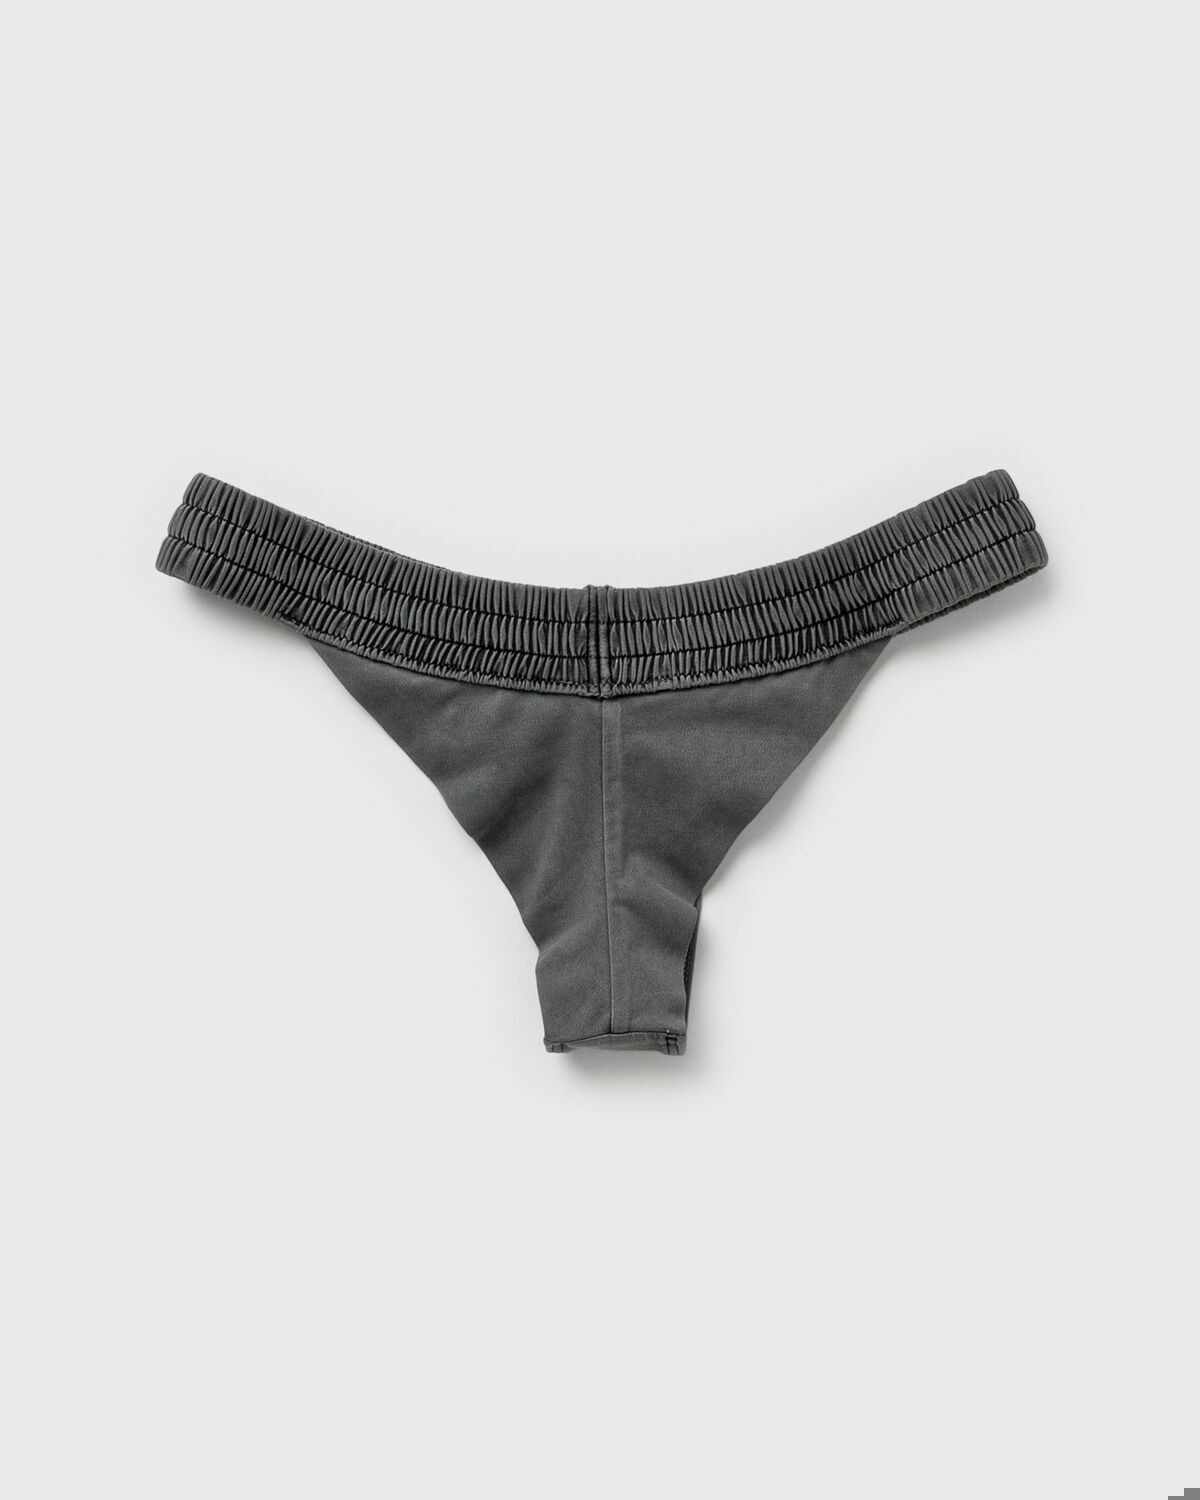 Calvin Klein Underwear WMNS BRAZILIAN Grey - GREY